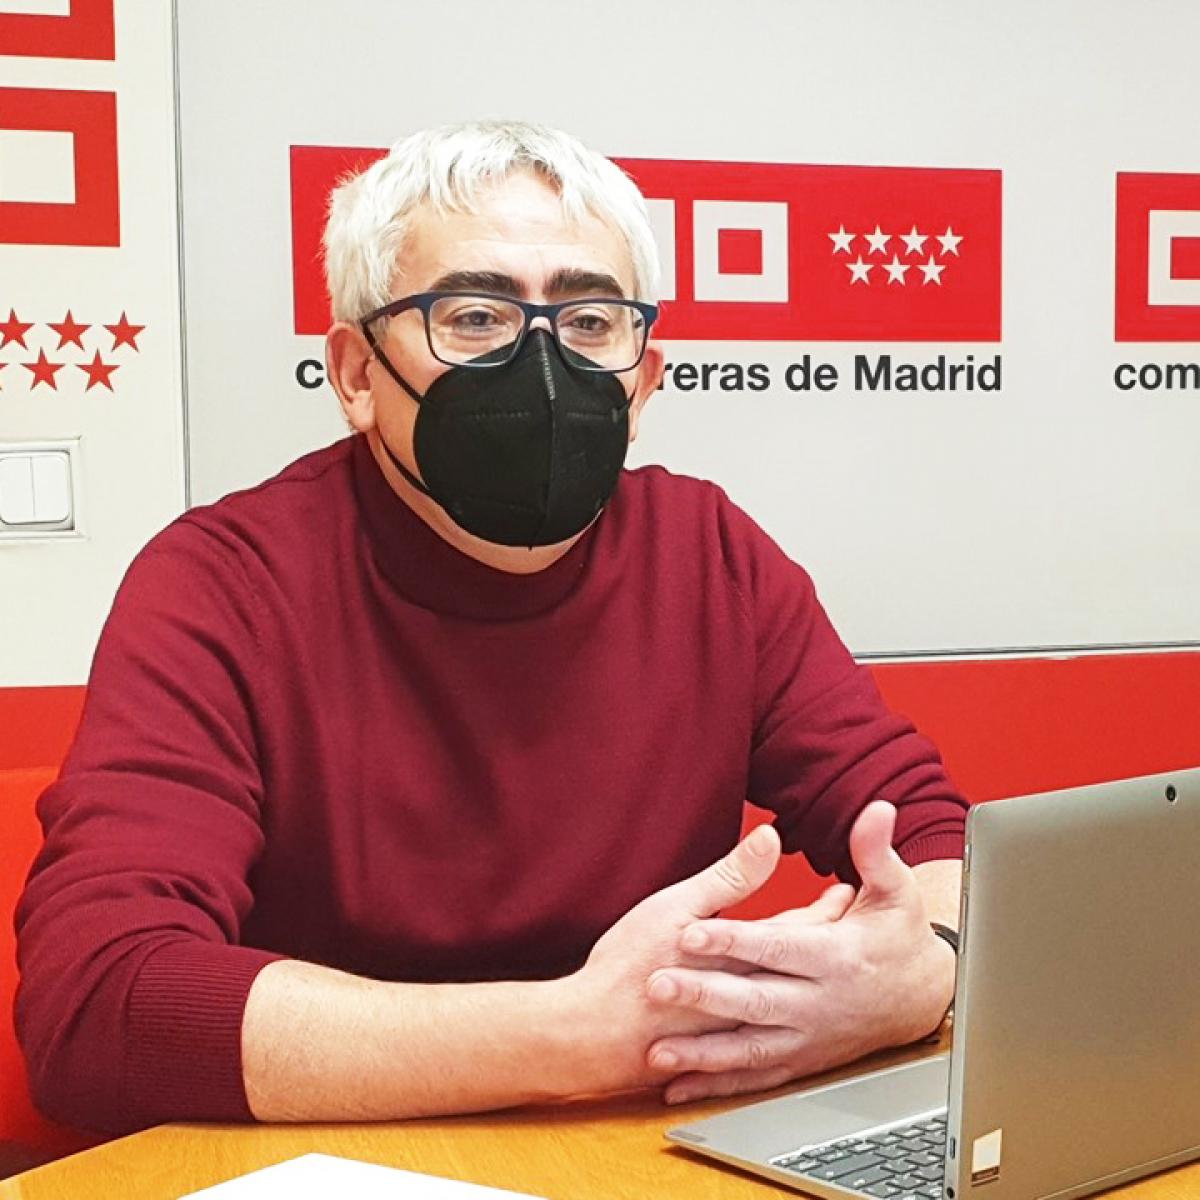 CCOO reclama voluntad política para impulsar el Plan Industrial de la Comunidad de Madrid